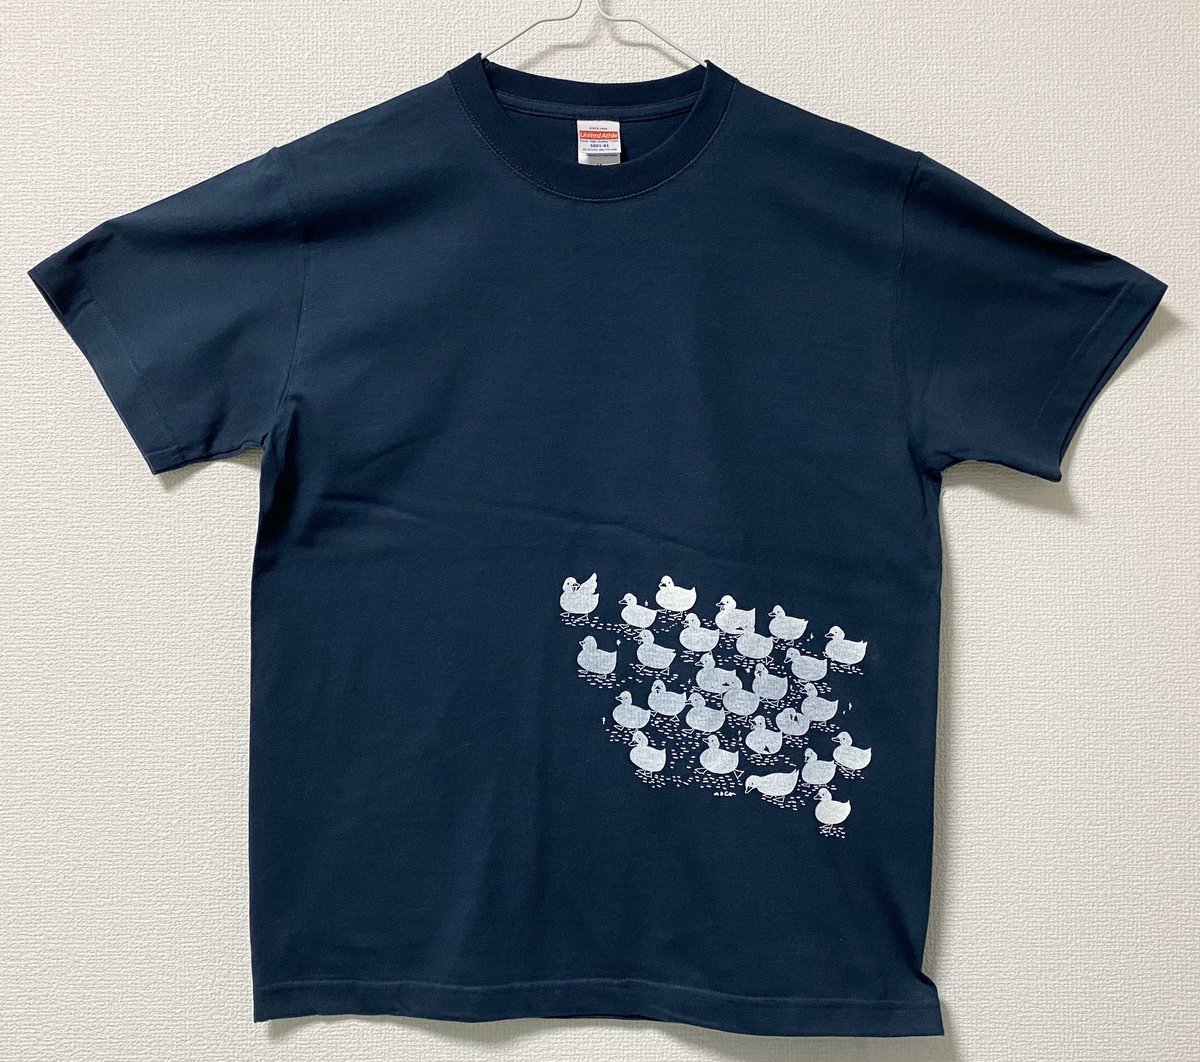 「アヒルの群れのシャツとトートできました! 」|mocaのイラスト